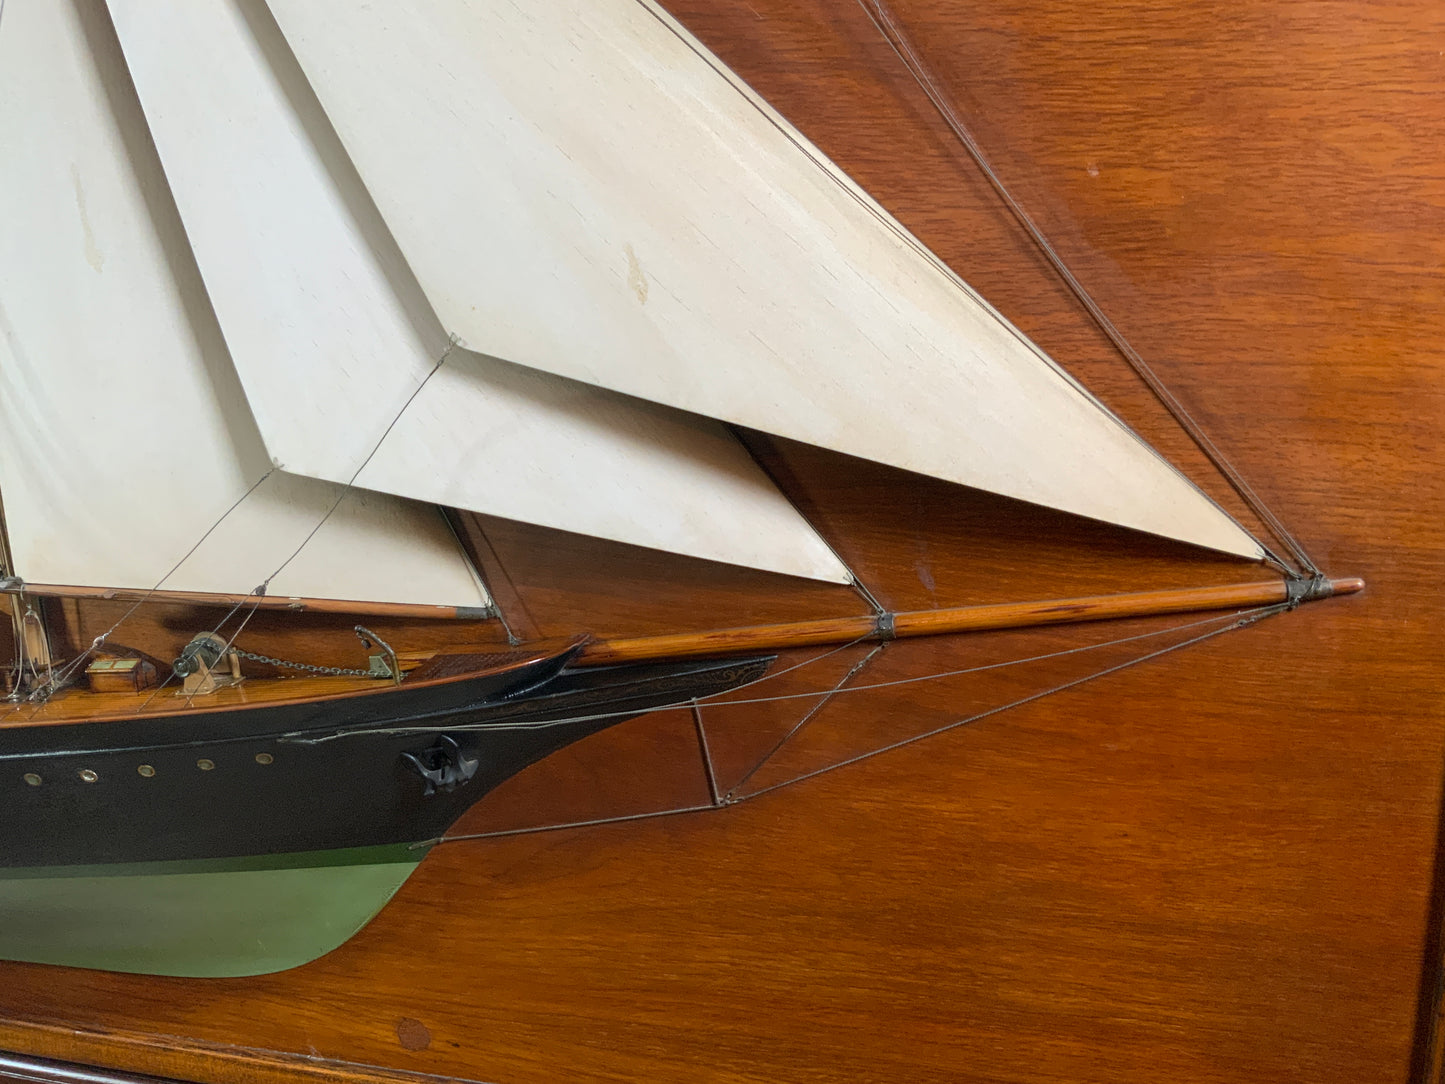 Builder’s Half Model of the Schooner Yacht Migrant - Lannan Gallery